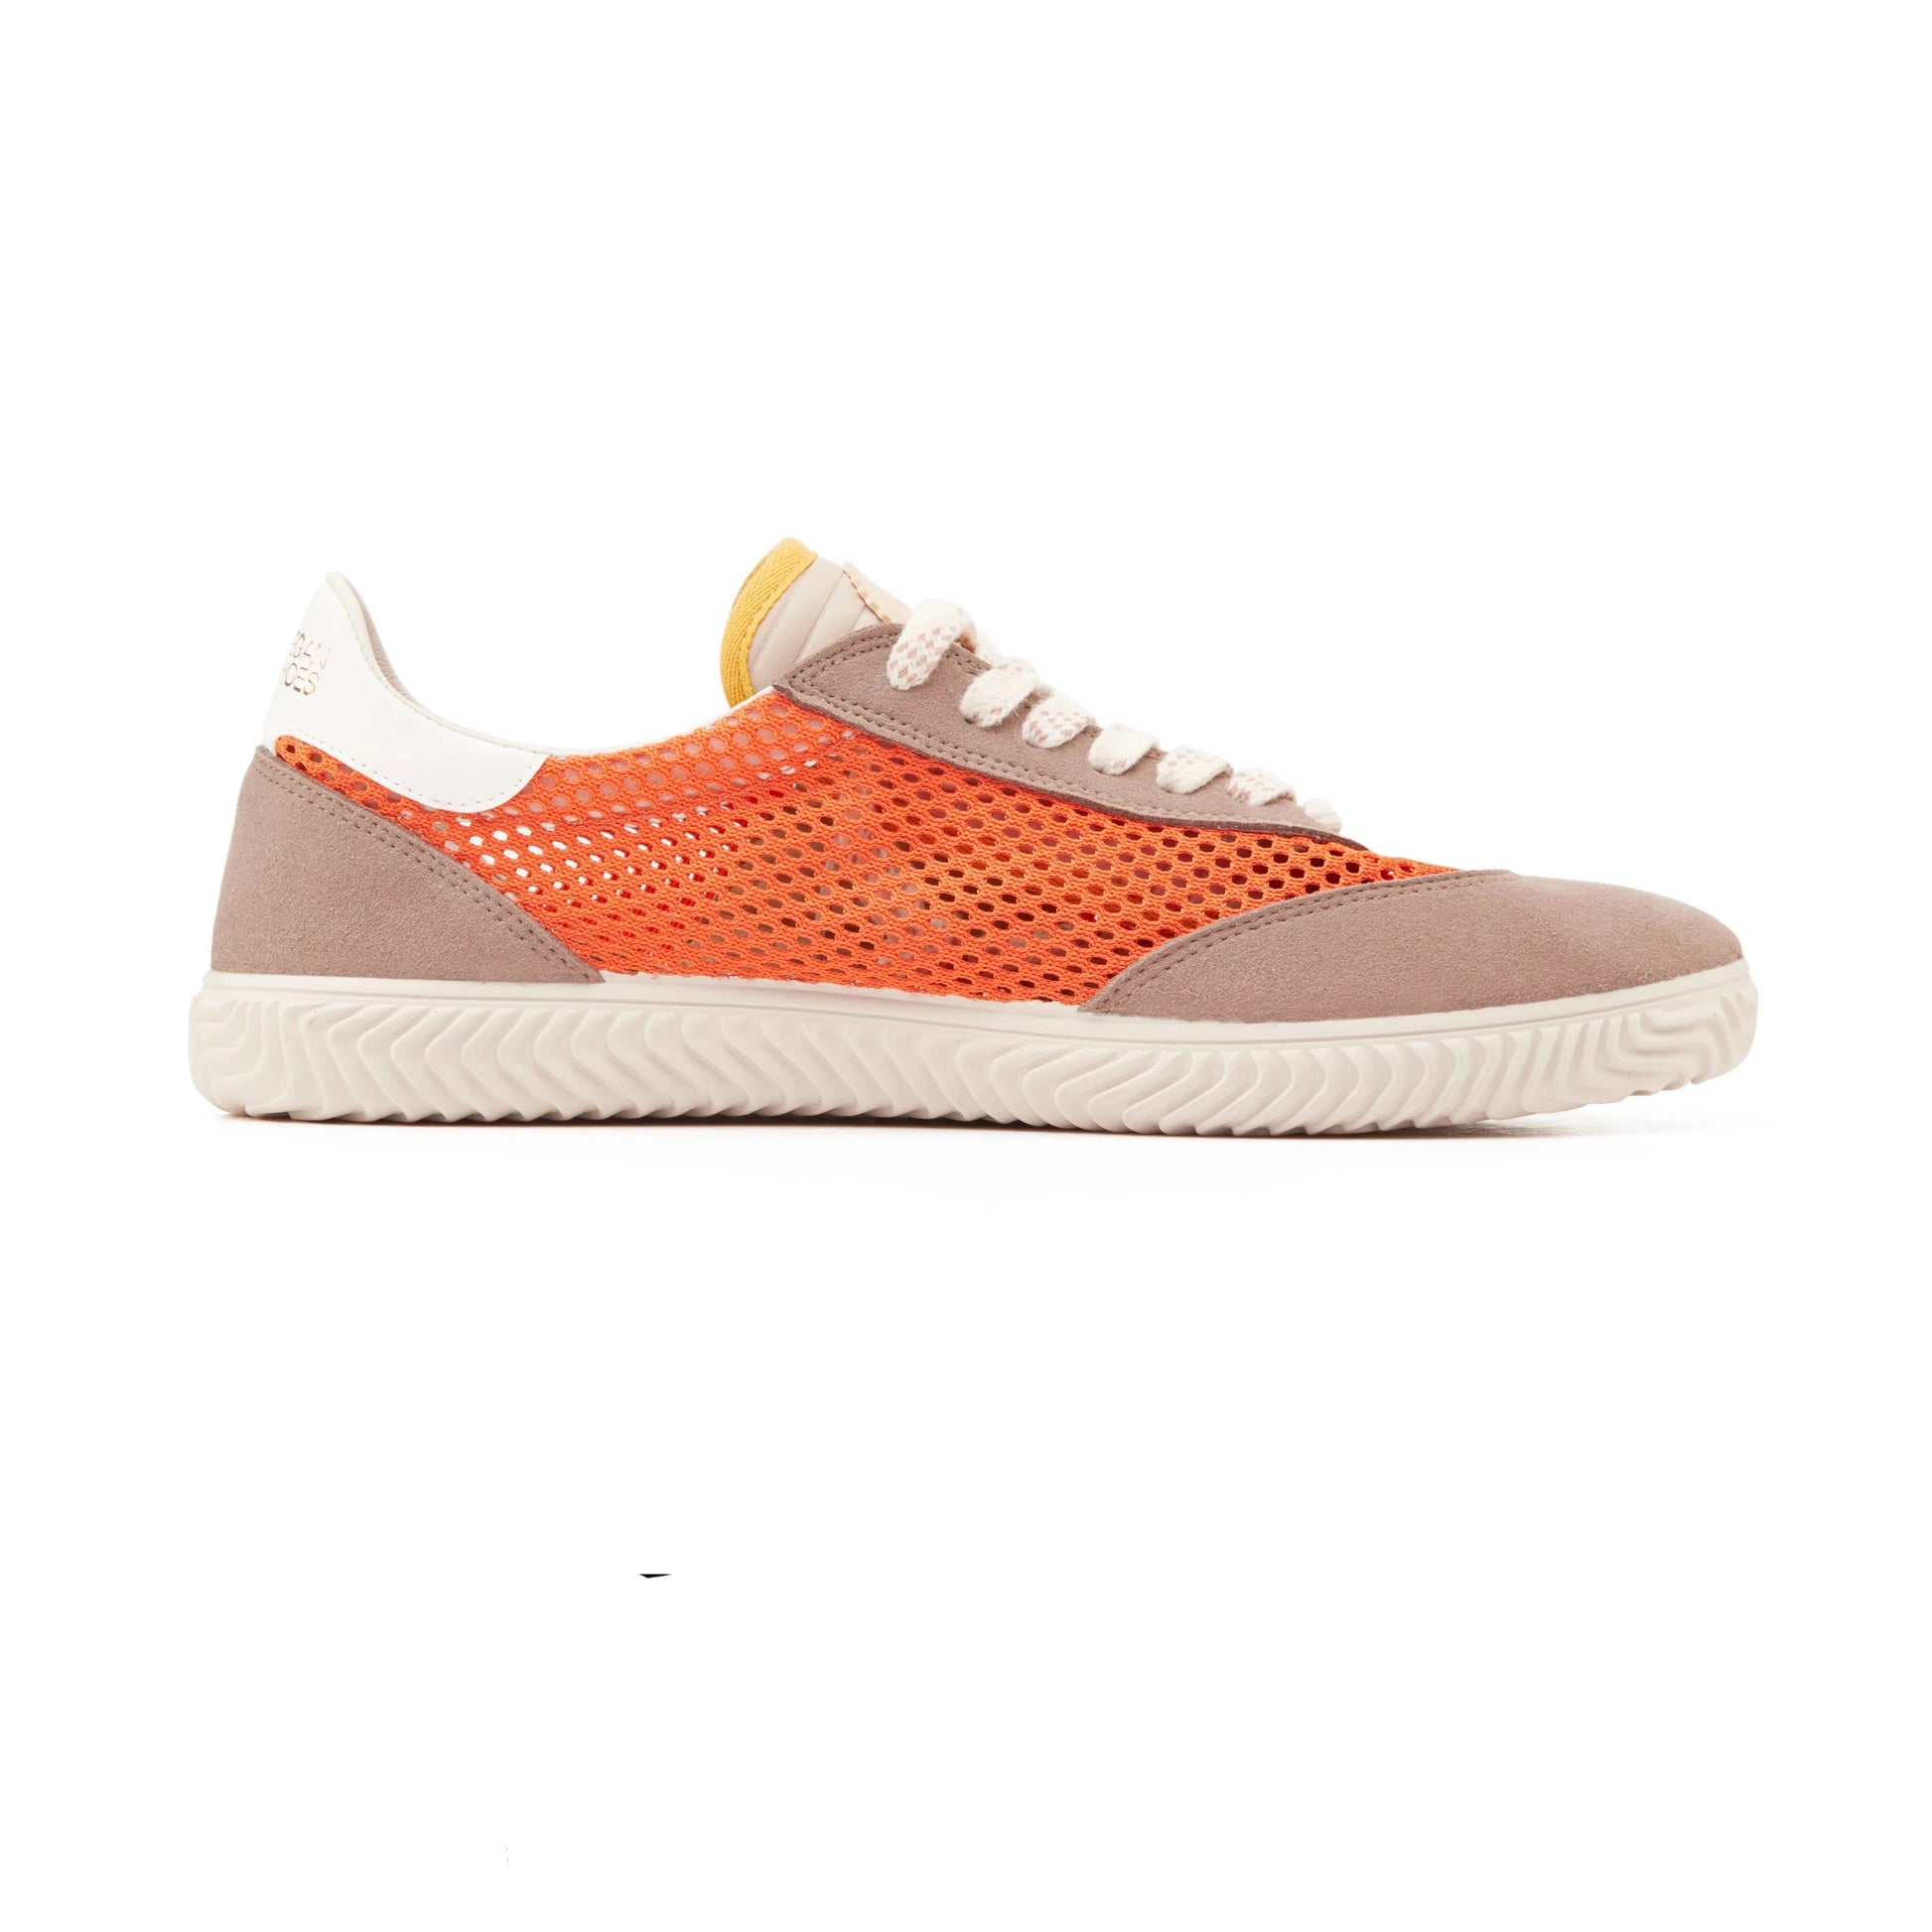 Sneakers De La Marca Duuo Para Mujer Modelo Ona Lace Mesh 011 En Color Naranja